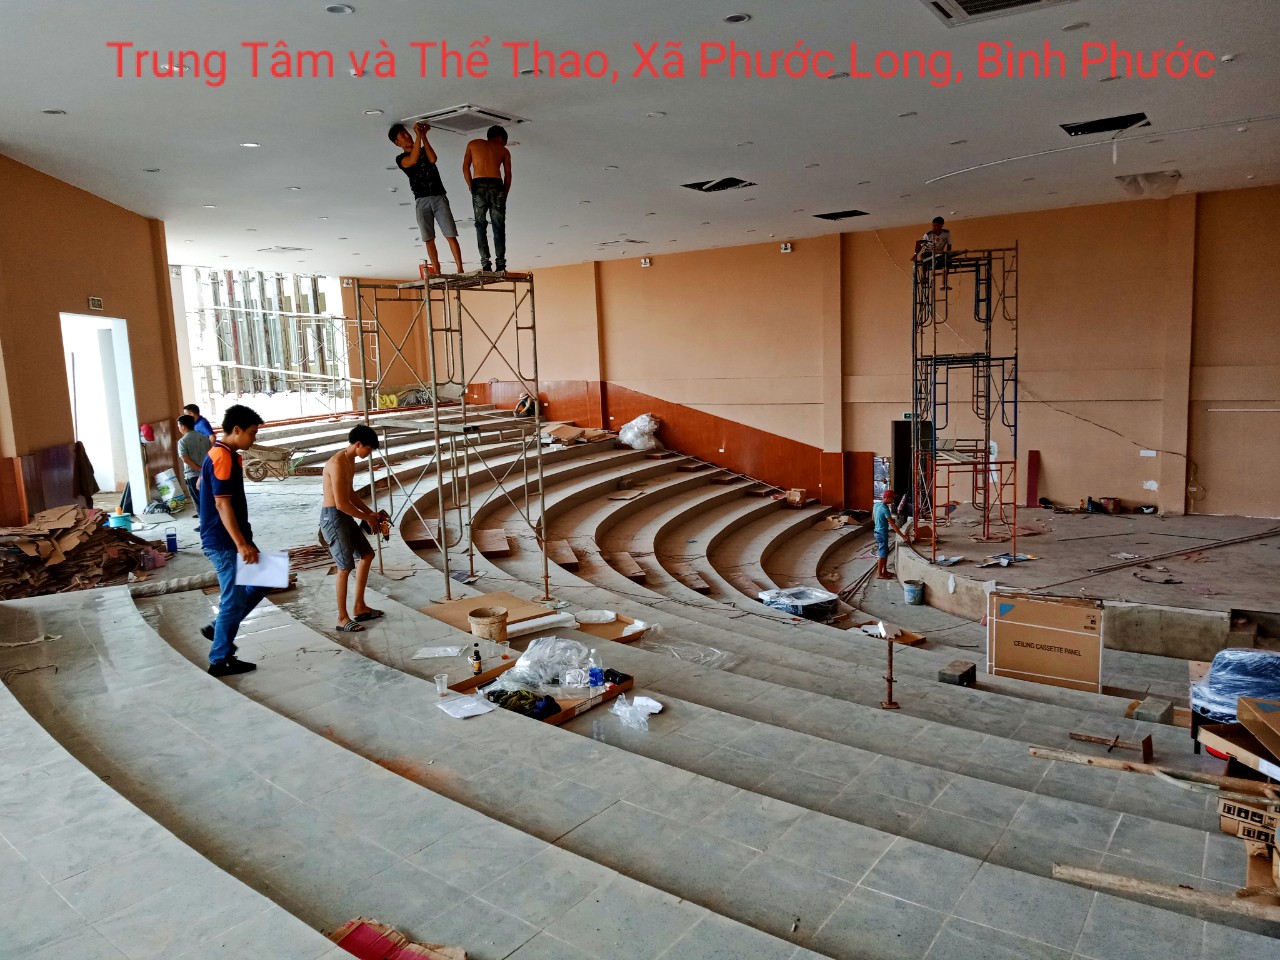 Khảo sát hệ thống ánh sáng sân khấu Trung tâm văn hóa thể thao thị xã Phước Long